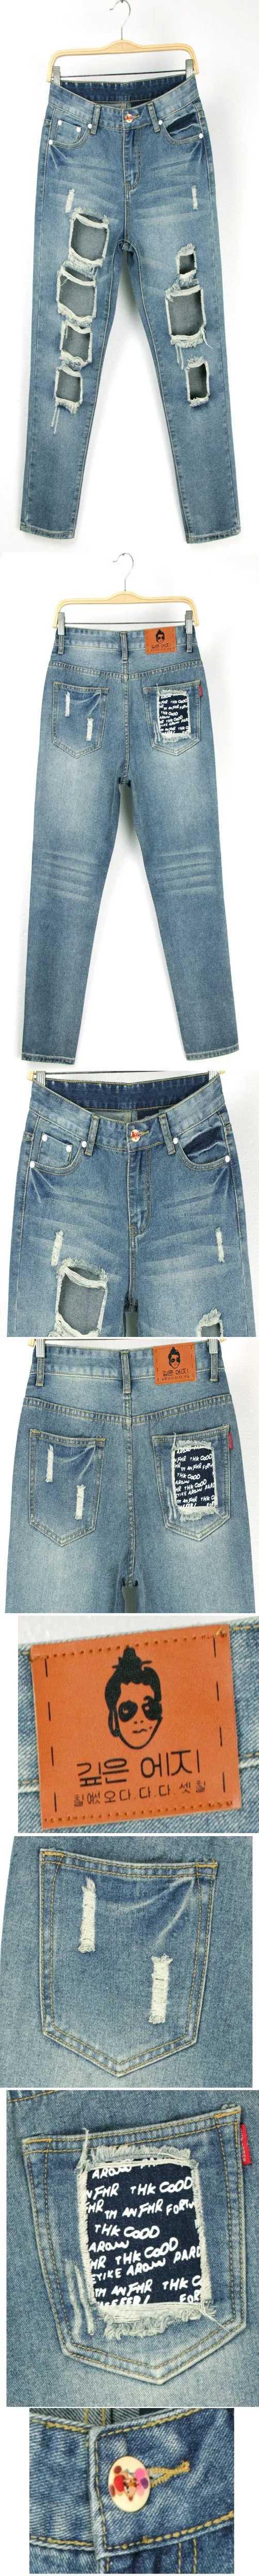 Джинсы женские Новые винтажные обтягивающие рваные джинсы модные брендовые тонкие женские джинсы-карандаш женские брюки